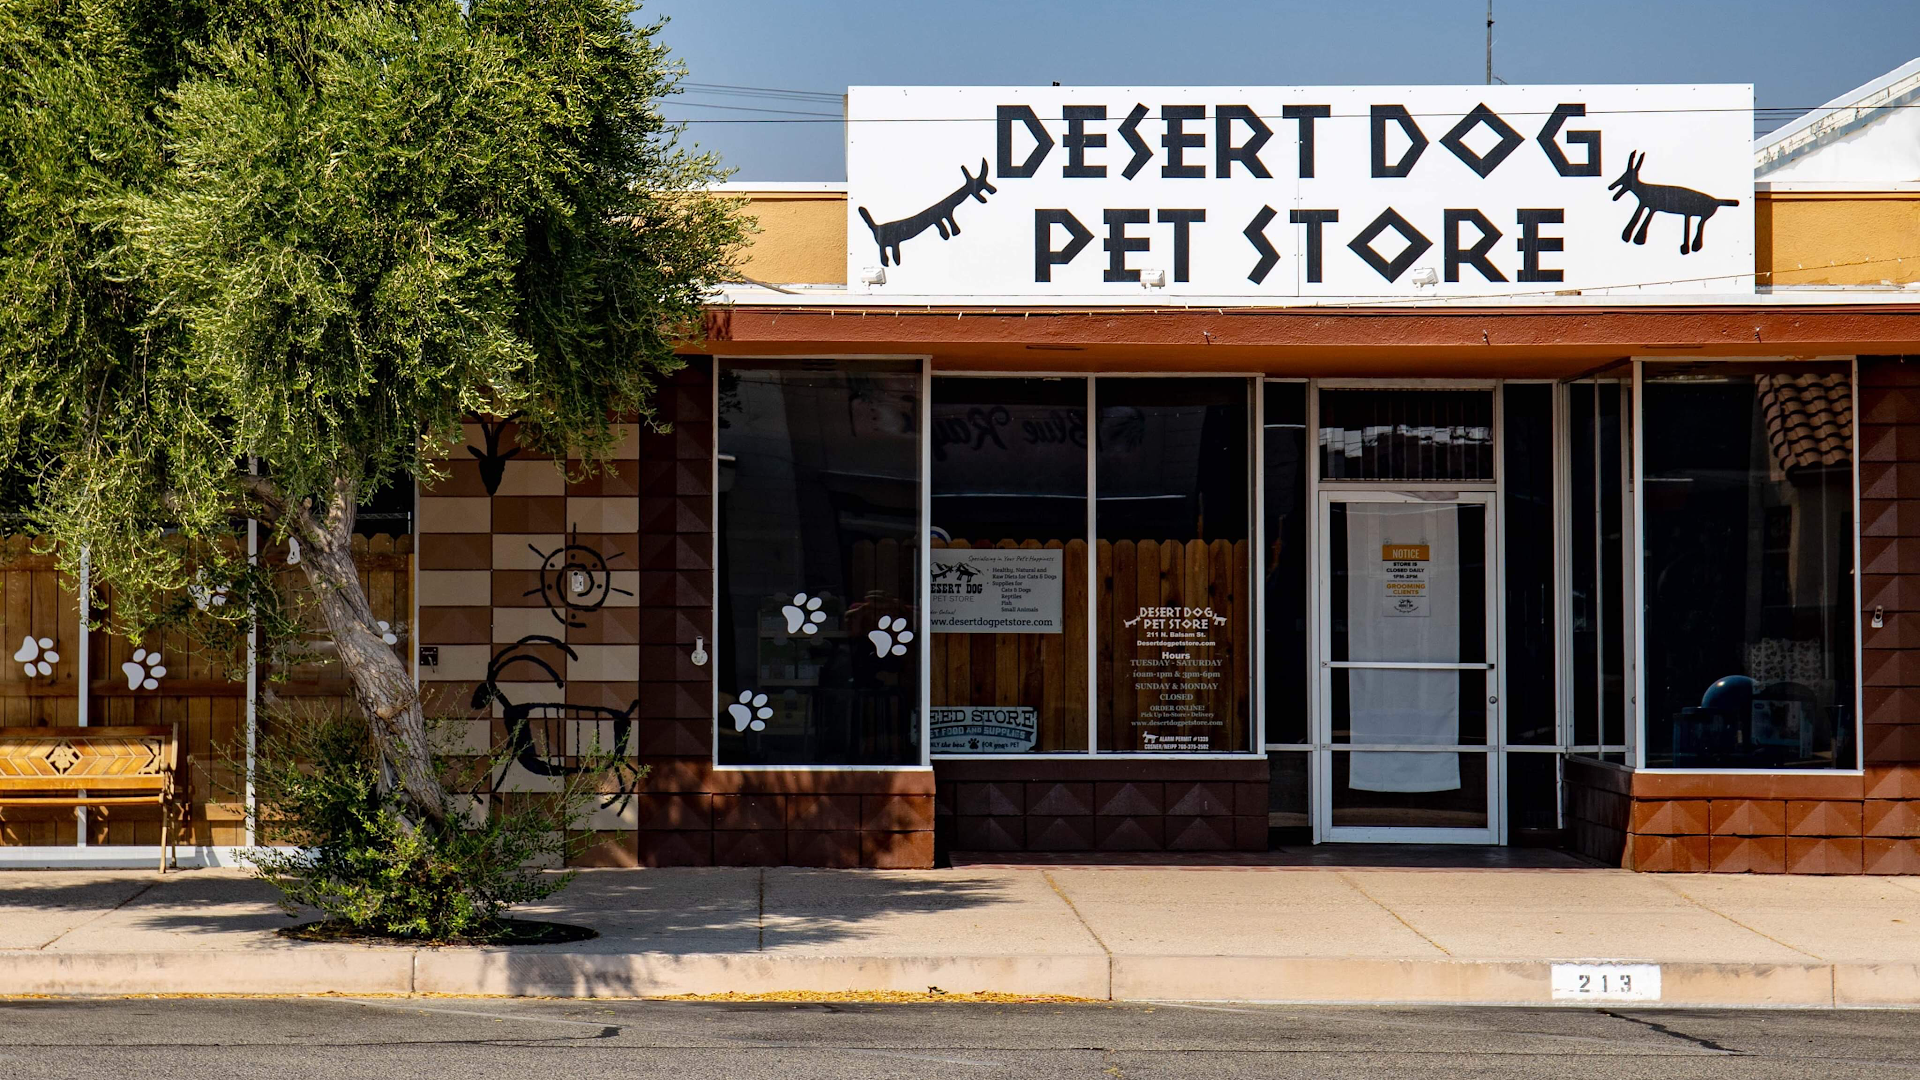 Desert Dog Pet Store